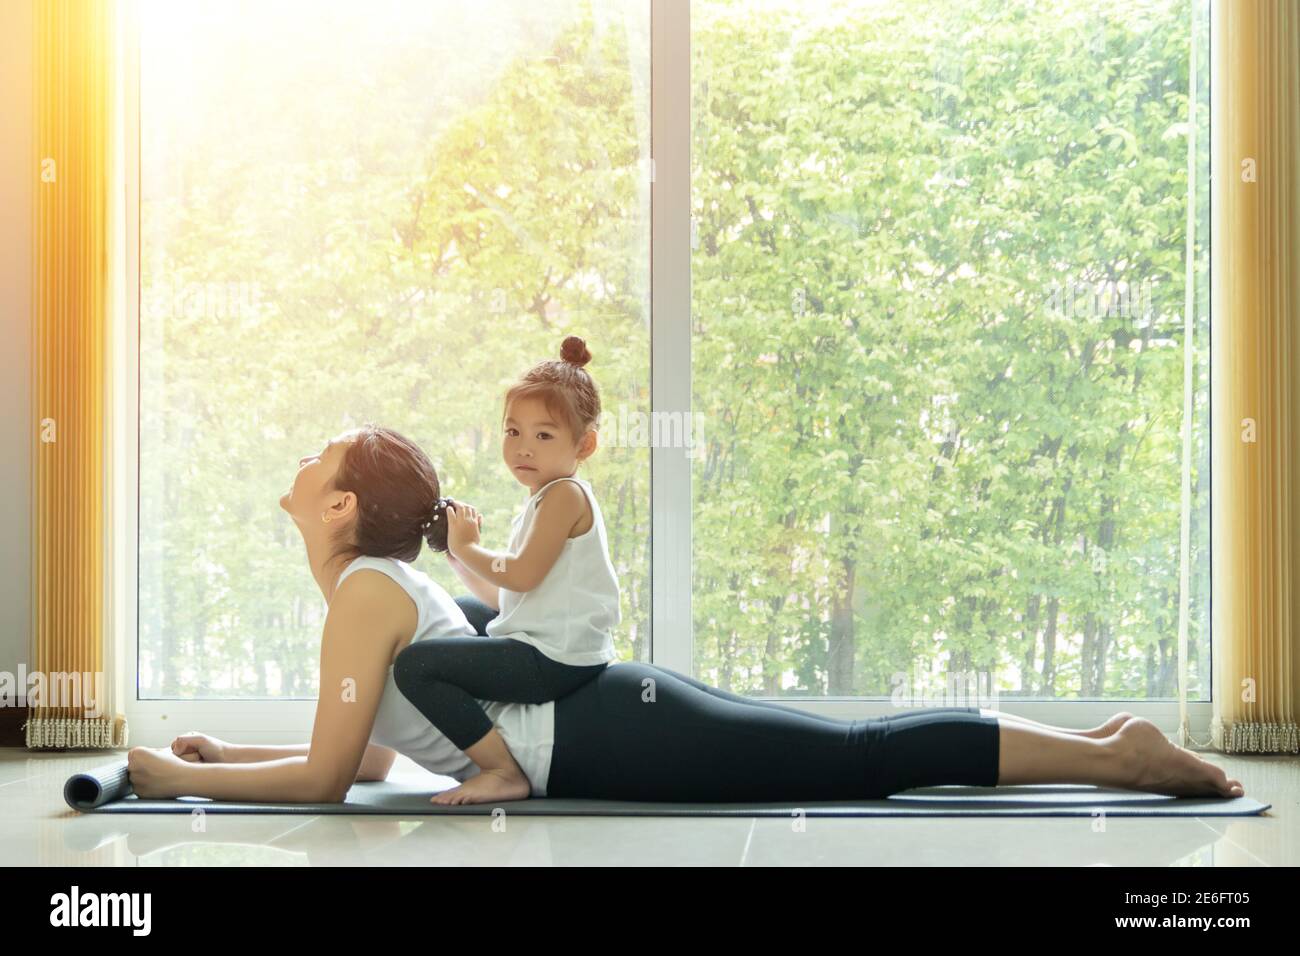 Asiatische Mutter Praxis Cobra Yoga Pose, trainieren zu Hause mit einem entzückenden Tochter sitzen auf ihrem Rücken, Aktivität zu tun zusammen zu Hause in der Familie Stockfoto